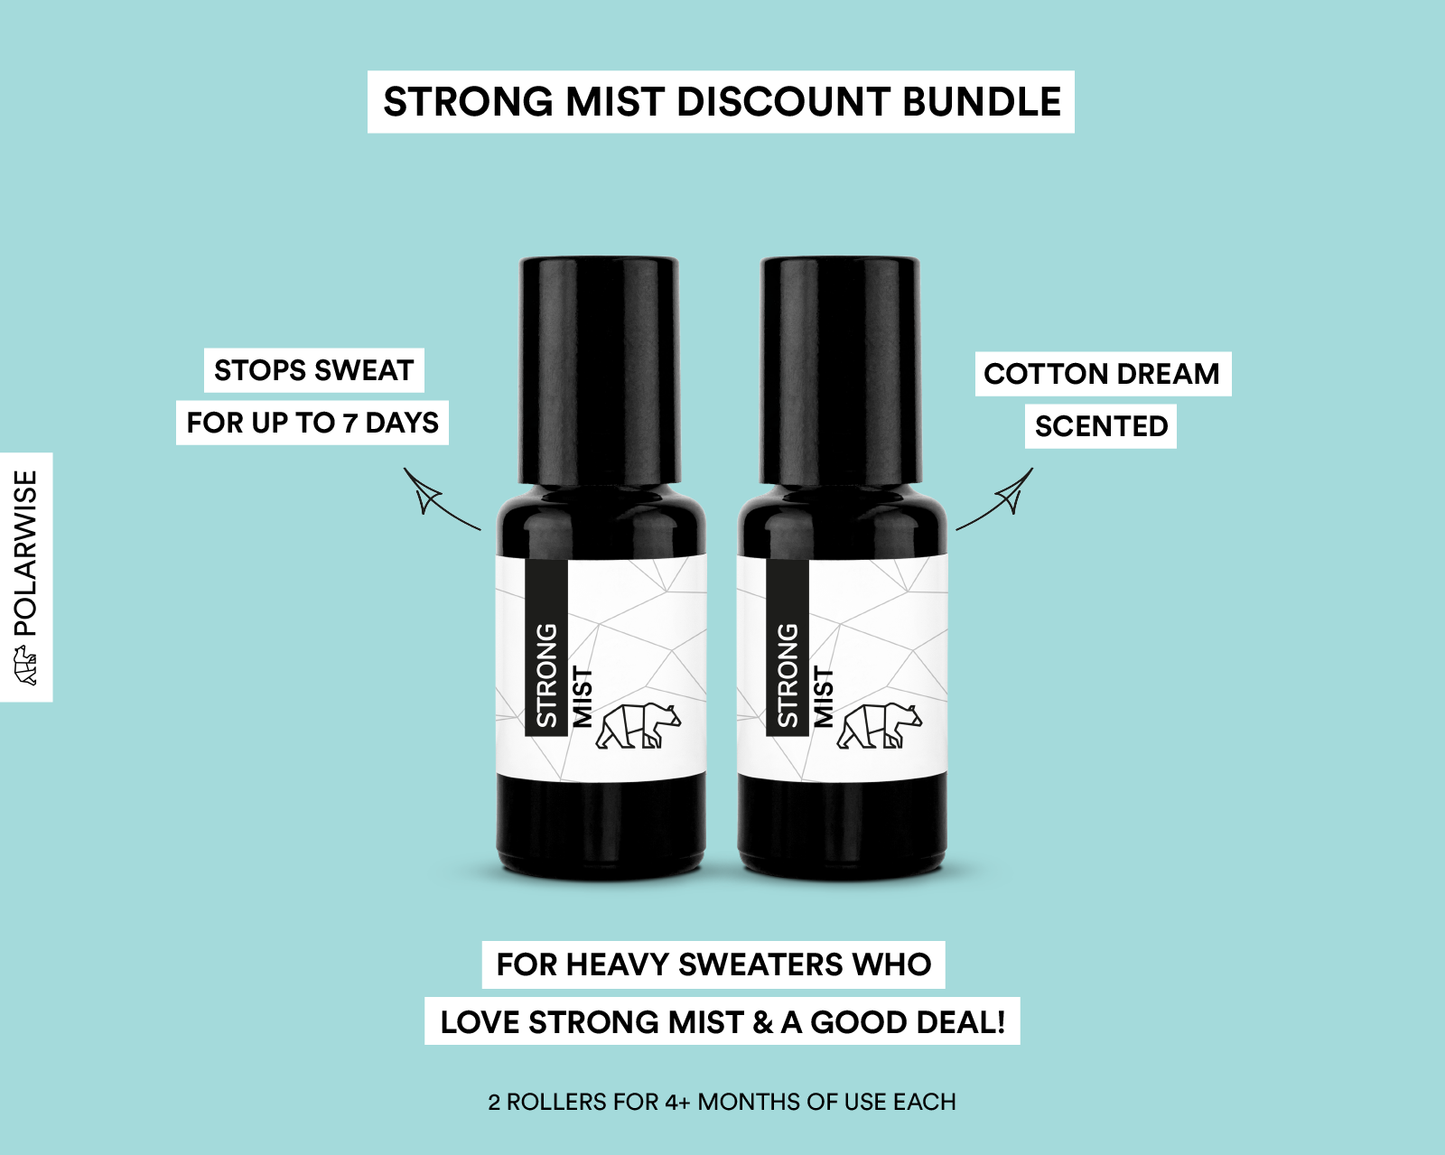 Strong Mist discount bundle